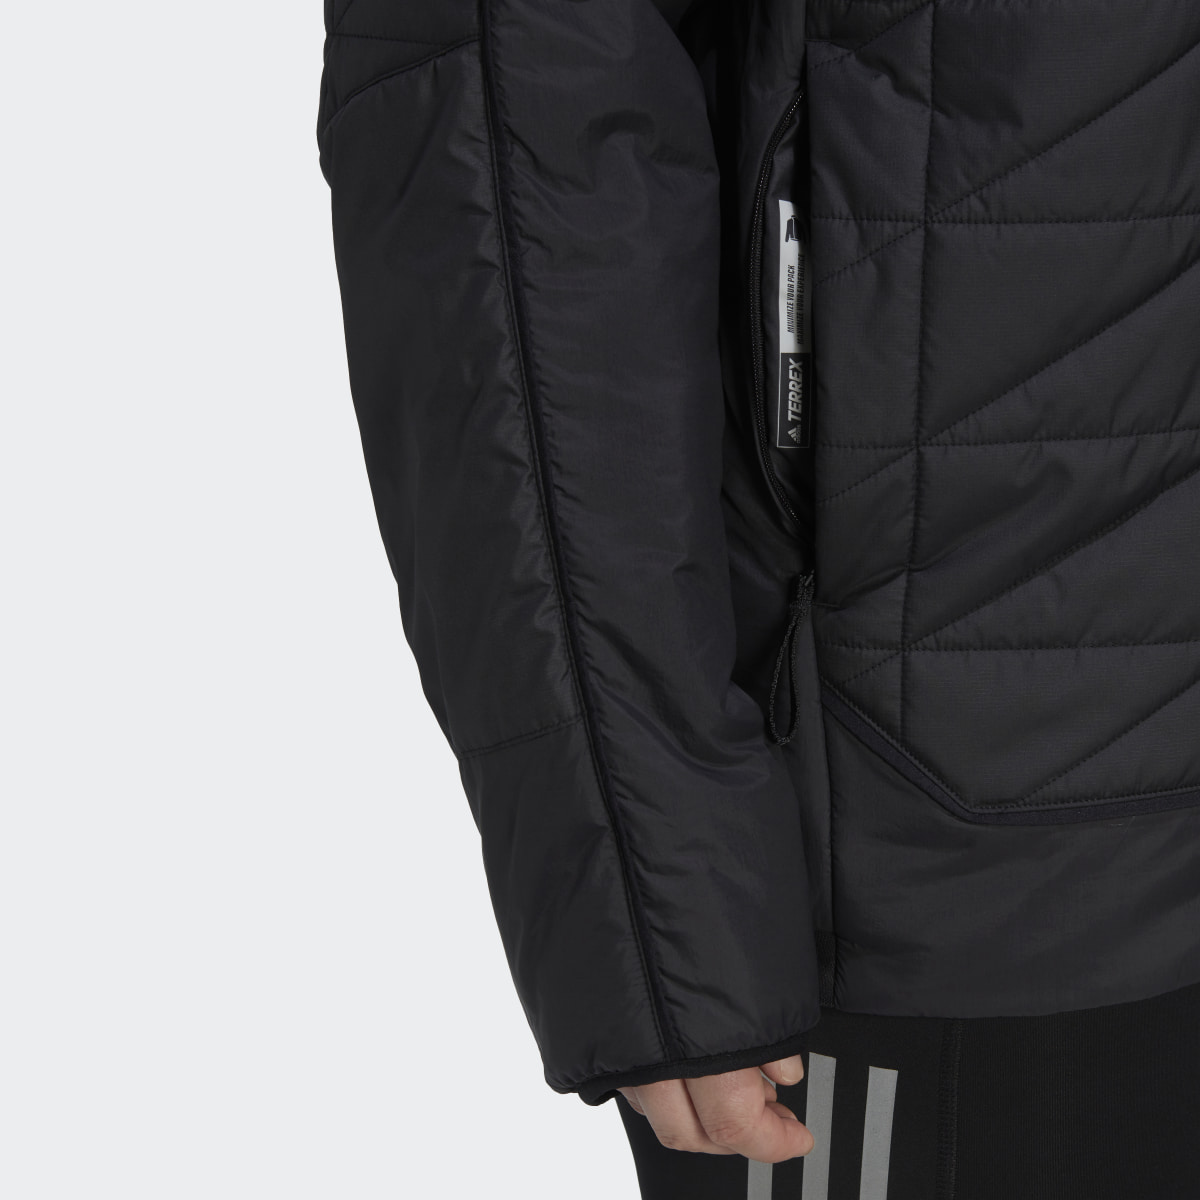 Adidas TERREX Multi Insulated Jacke – Große Größen. 9